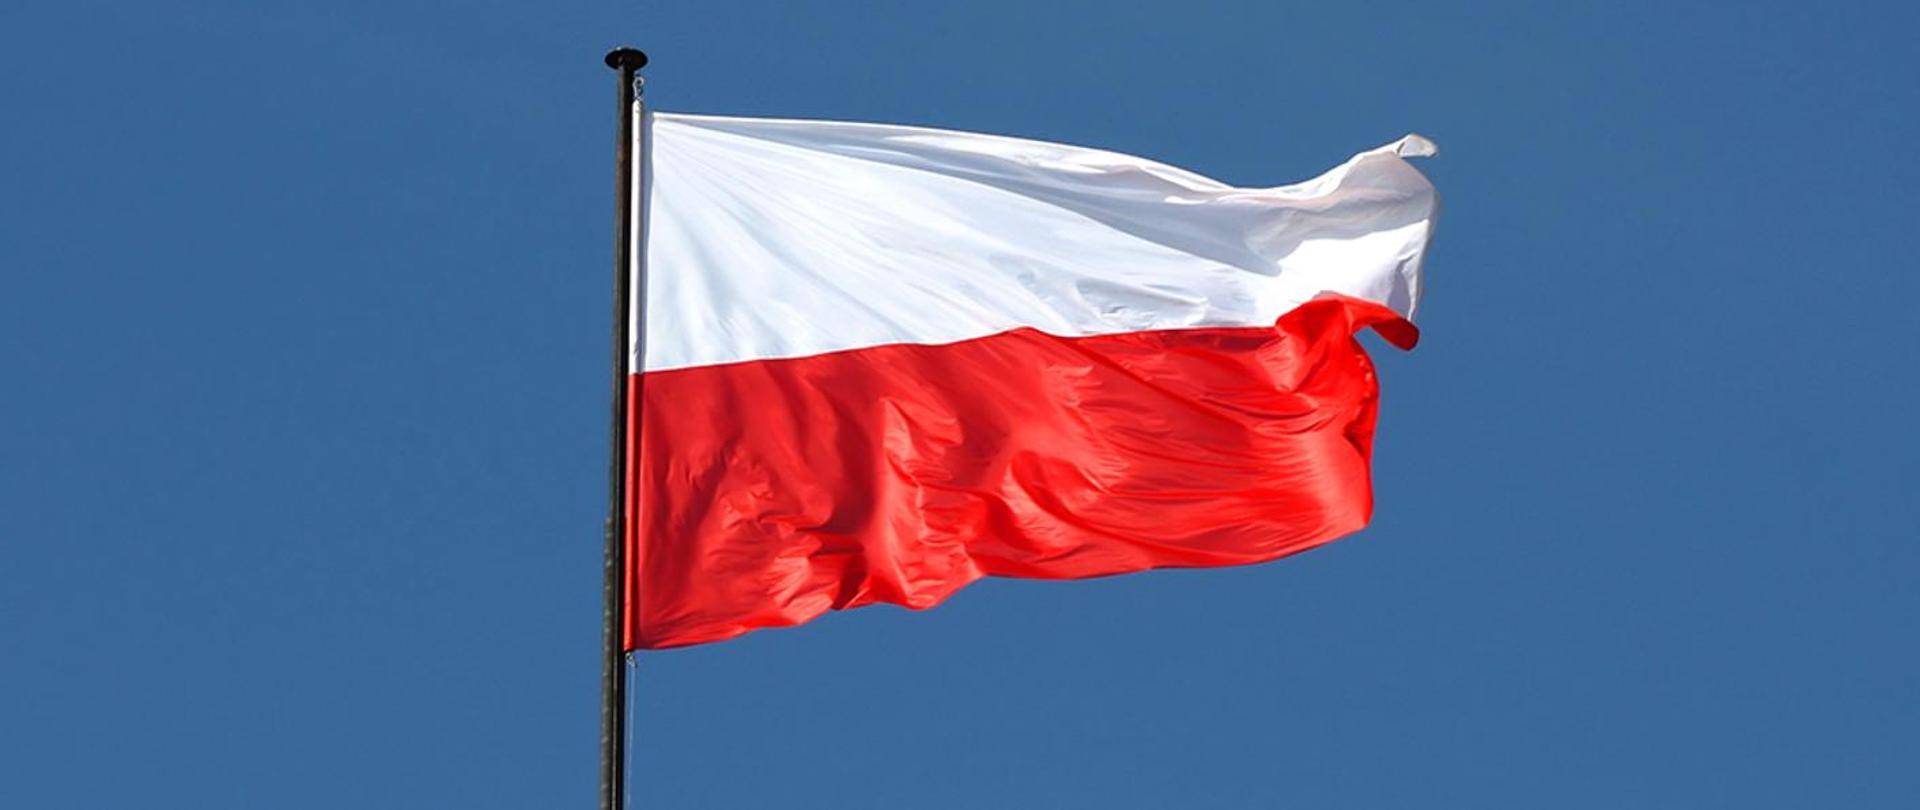 Na zdjęciu widać Flagę Rzeczypospolitej Polskiej zawieszoną na maszcie na niebieskim tle.